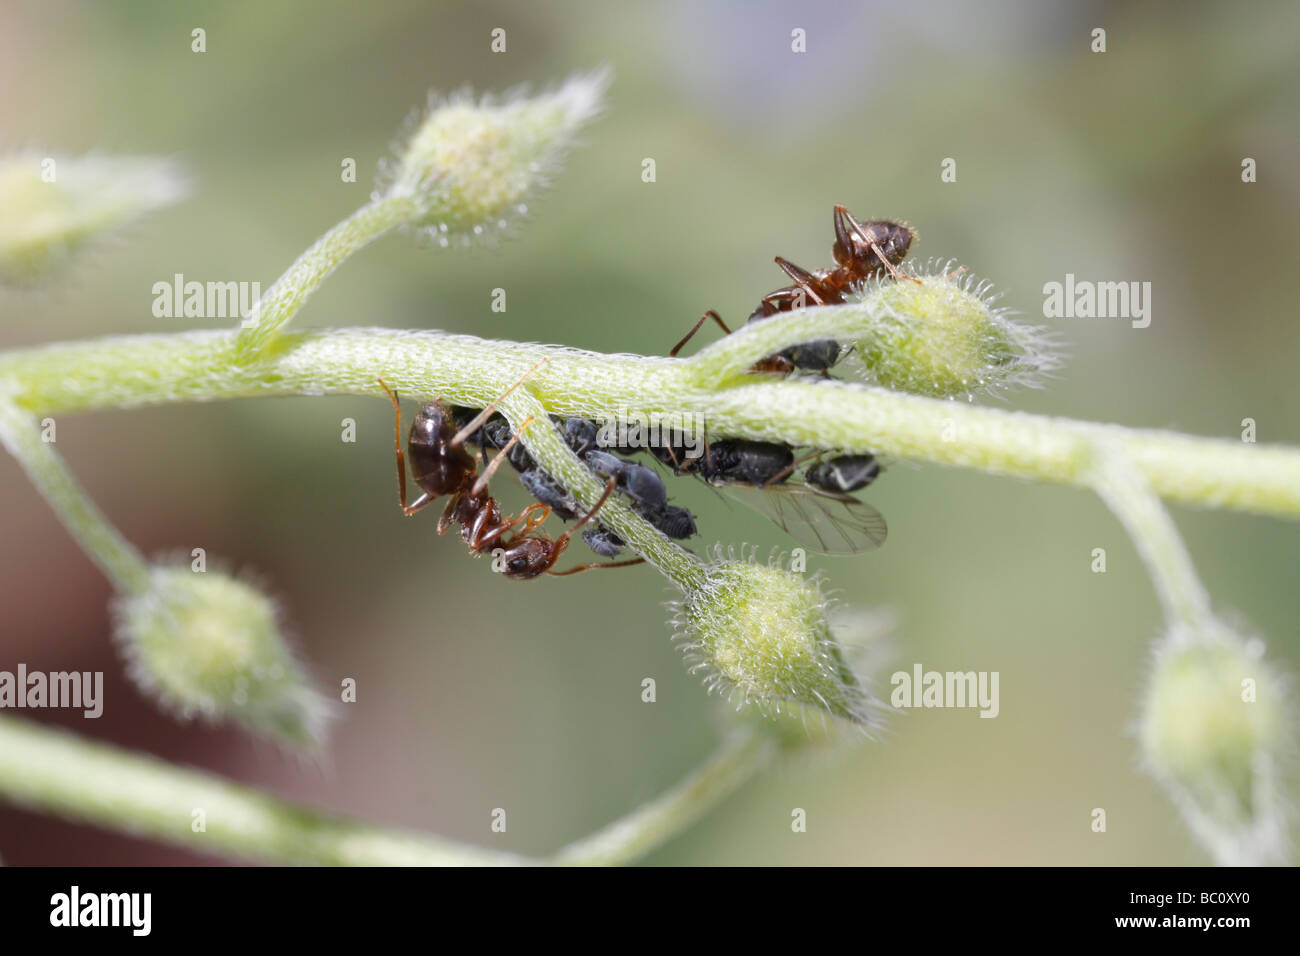 Lasius niger, il giardino nero ant e afidi (aphis fa). La formica è la mungitura afidi. Il fiore è un dimenticare-me non Foto Stock